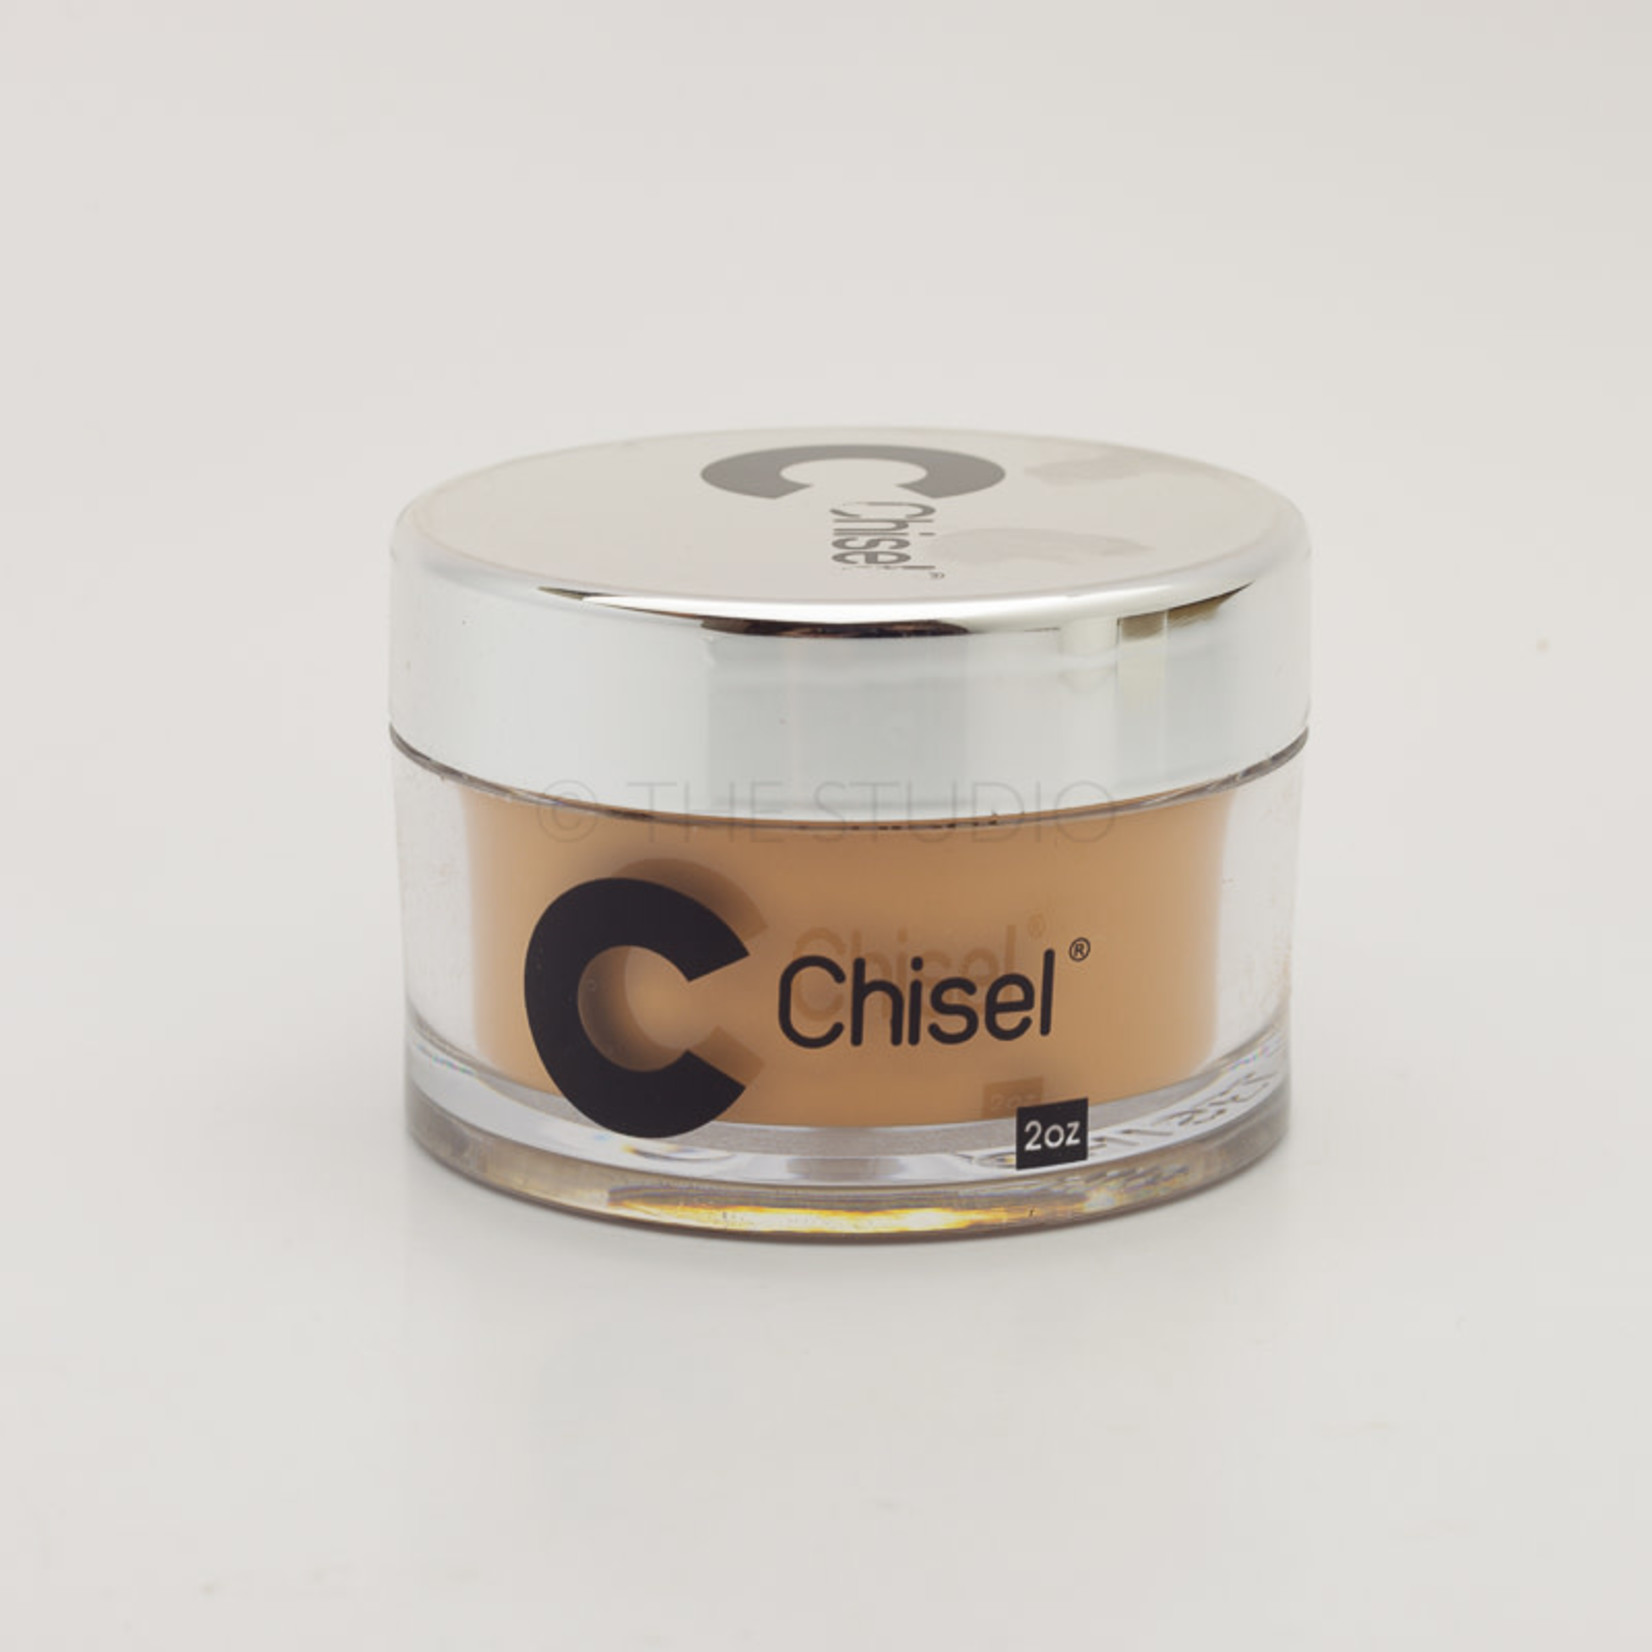 Chisel Chisel - Solid 039 - AIO Powder - 2 oz